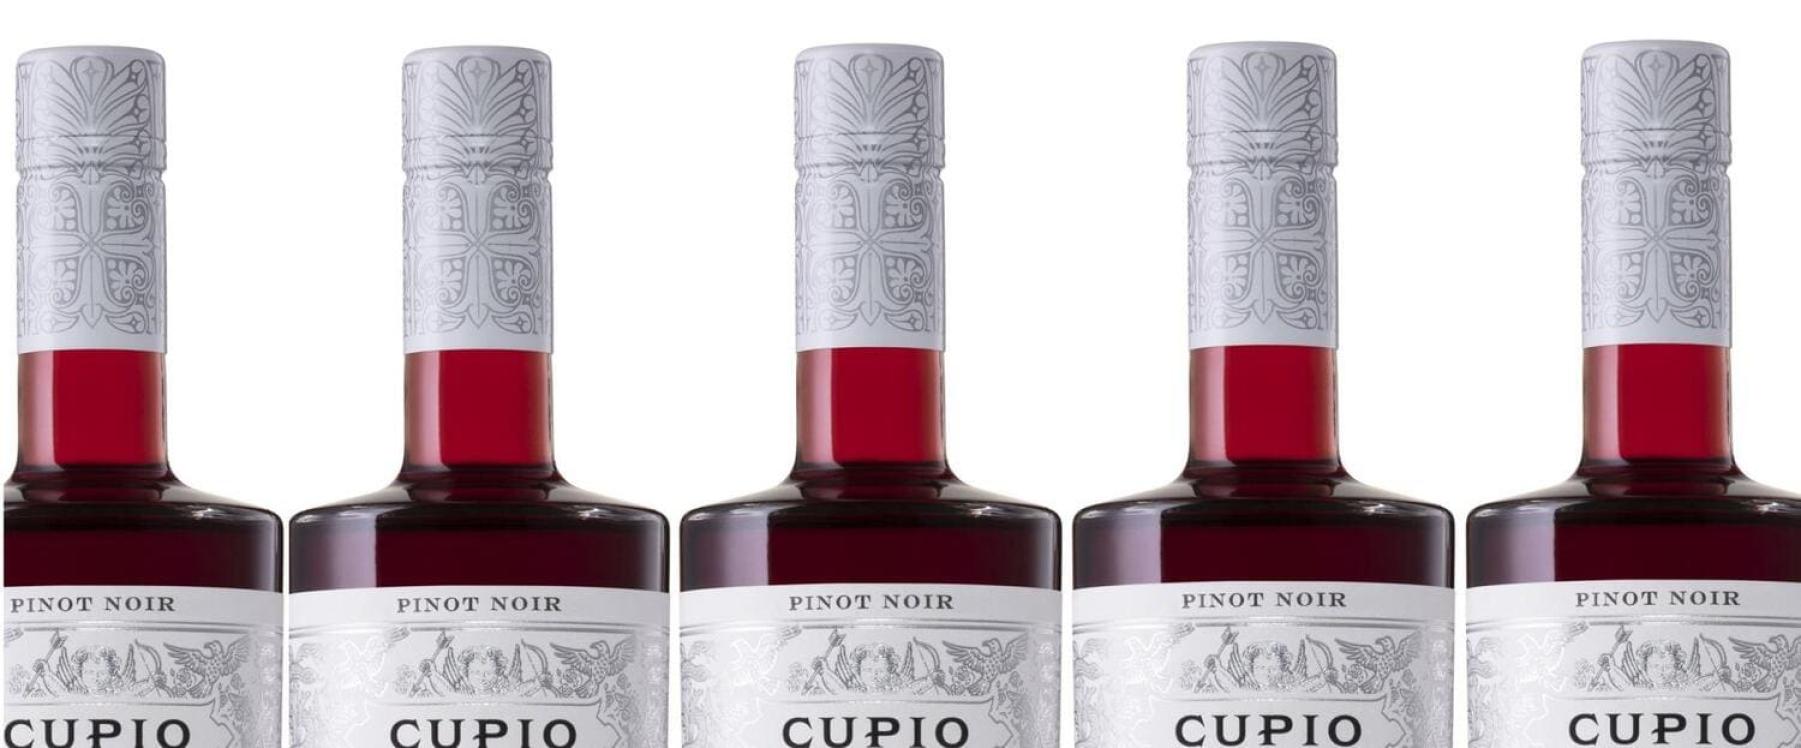 Cupio Wines Closure